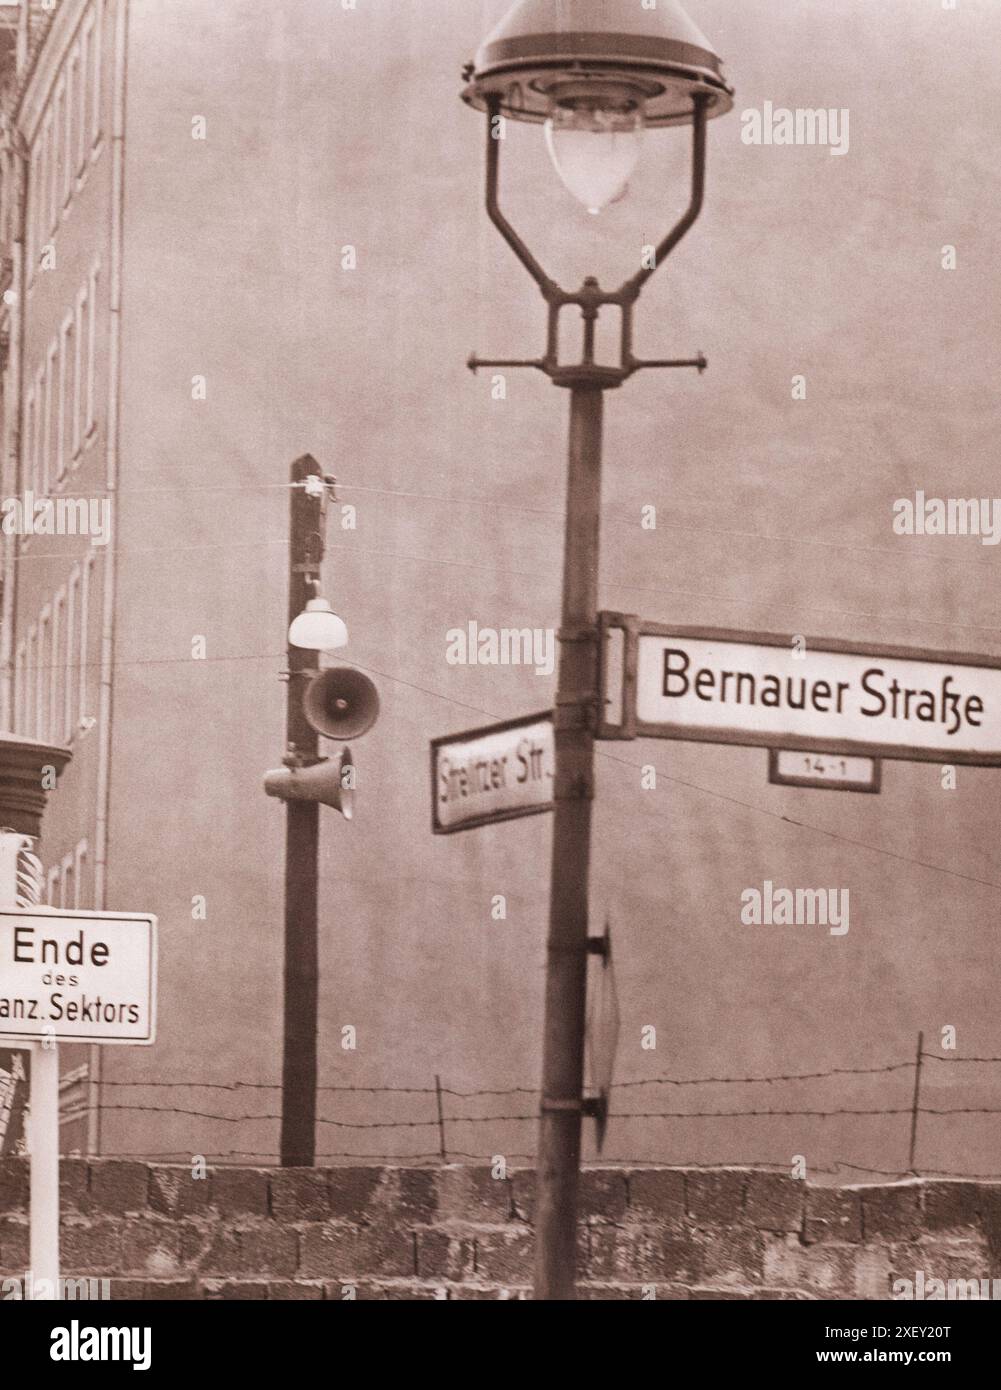 Crisi di Berlino del 1961: Costruzione del muro a Bernauerstrasse sono stati installati grandi altoparlanti per proclamare la propaganda della Germania Est. Belin Est - Berlino Ovest. 25 ottobre 1961 Foto Stock